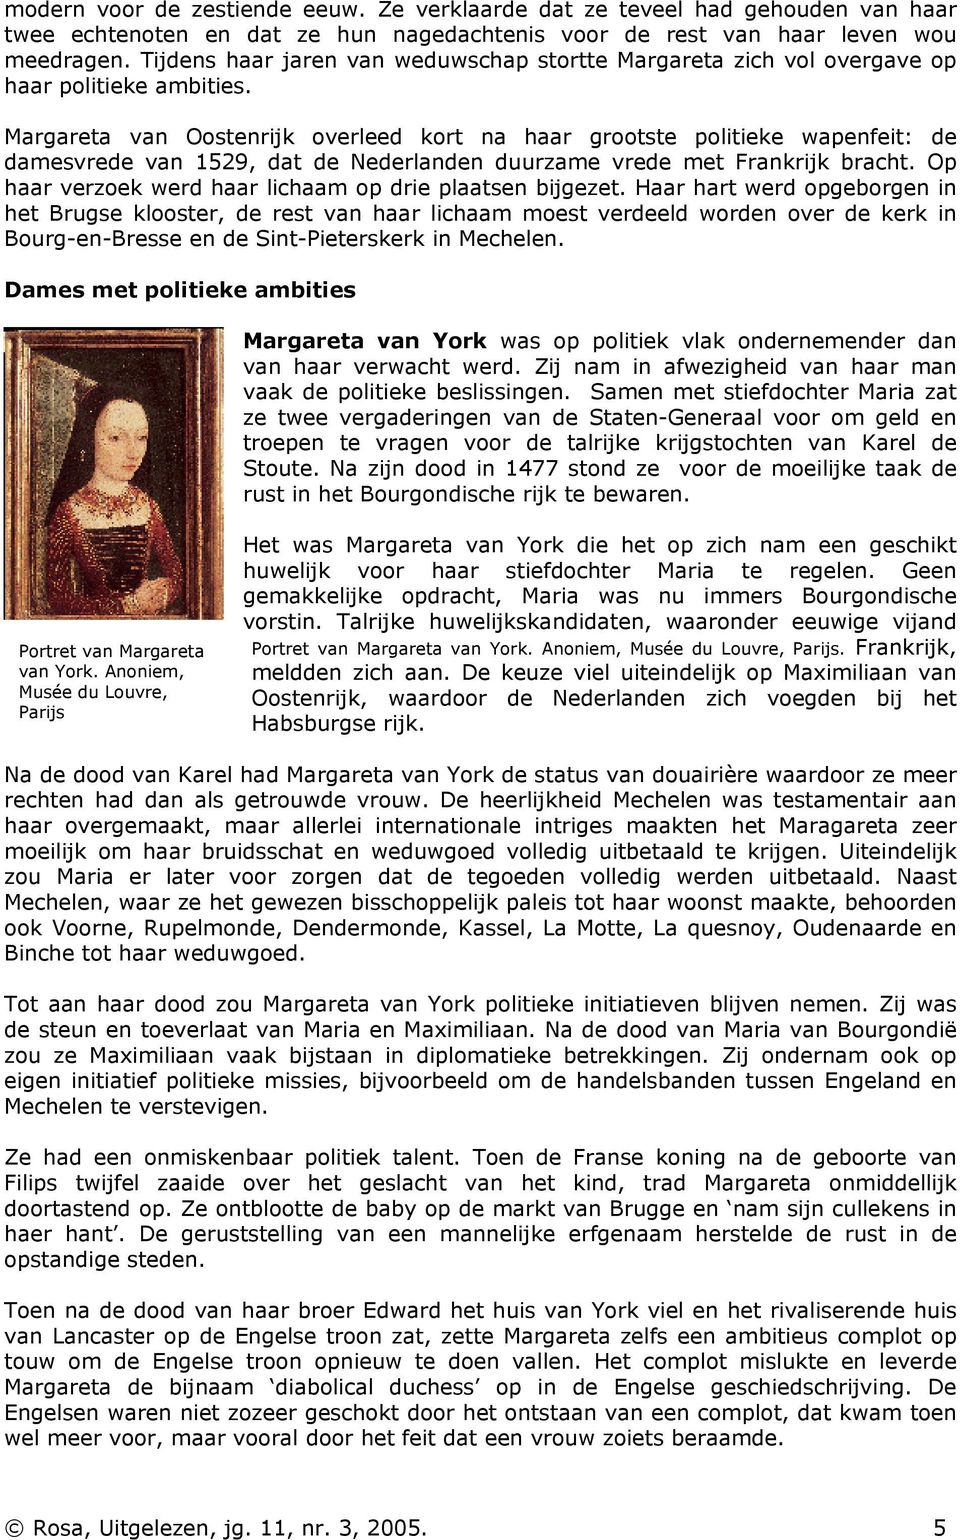 Margareta van Oostenrijk overleed kort na haar grootste politieke wapenfeit: de damesvrede van 1529, dat de Nederlanden duurzame vrede met Frankrijk bracht.